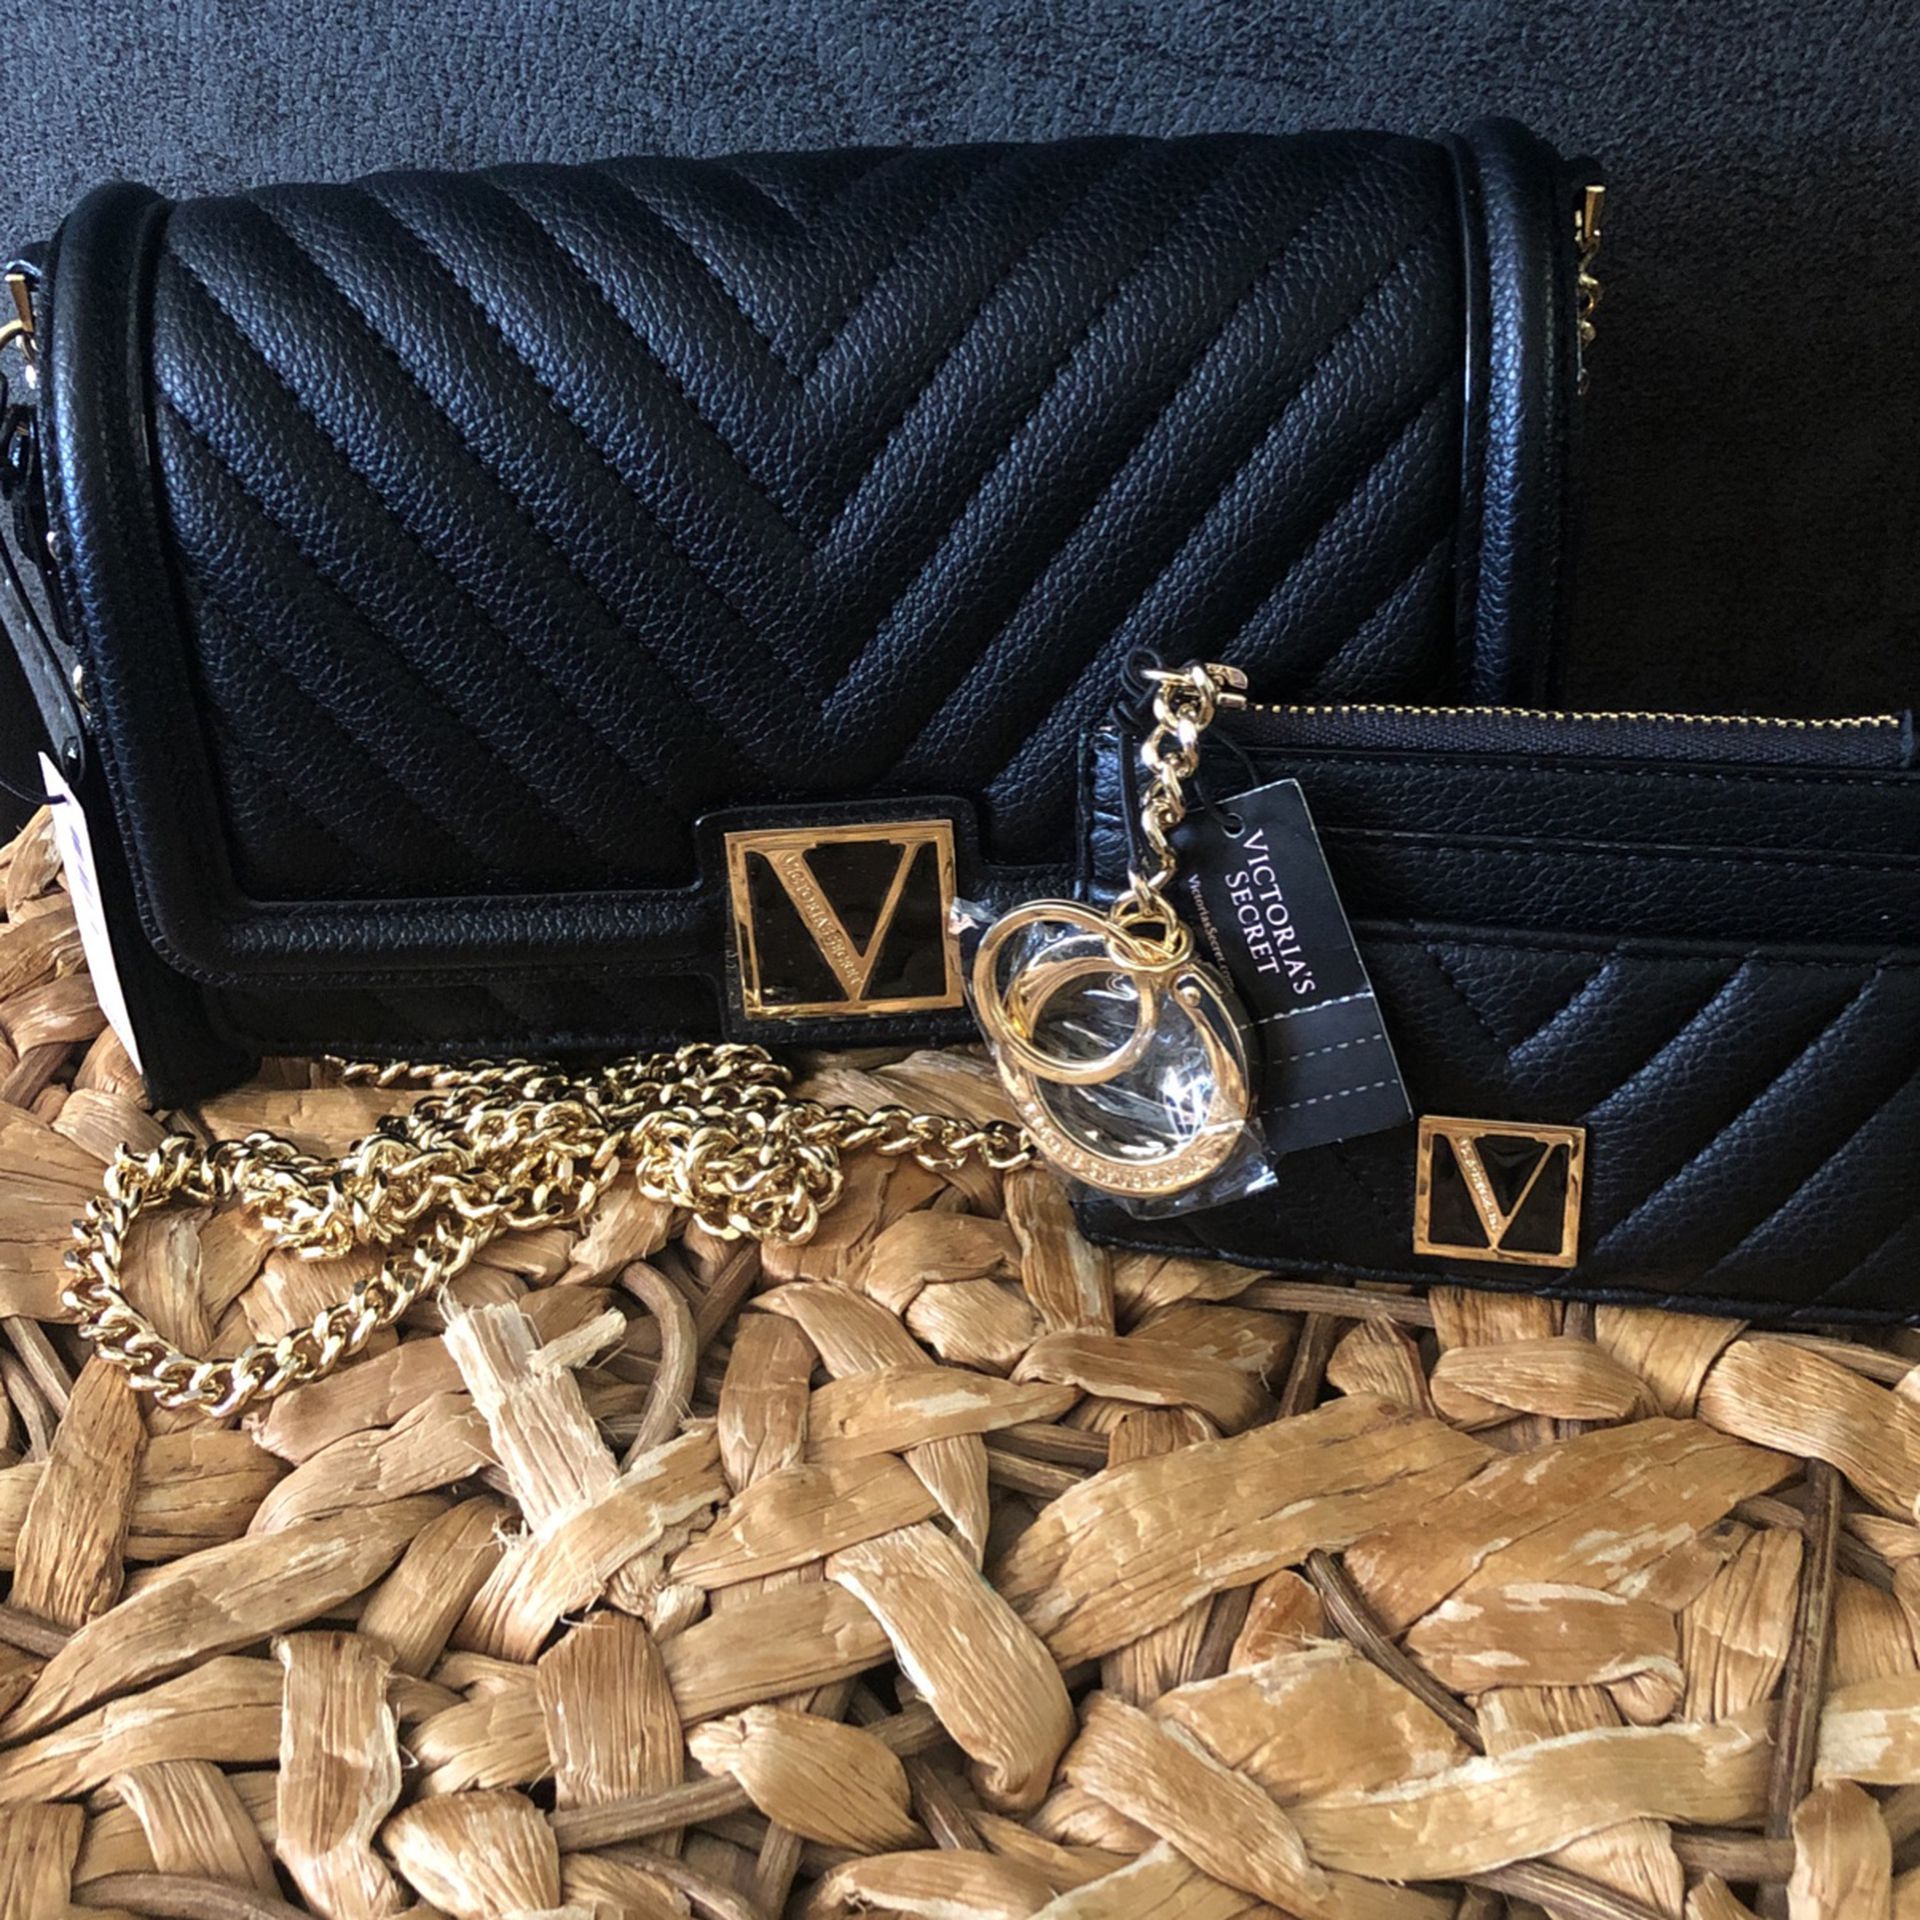 Victoria’s Secret Crossbody Bag With Victoria’s Secret Credit Card Wallet 